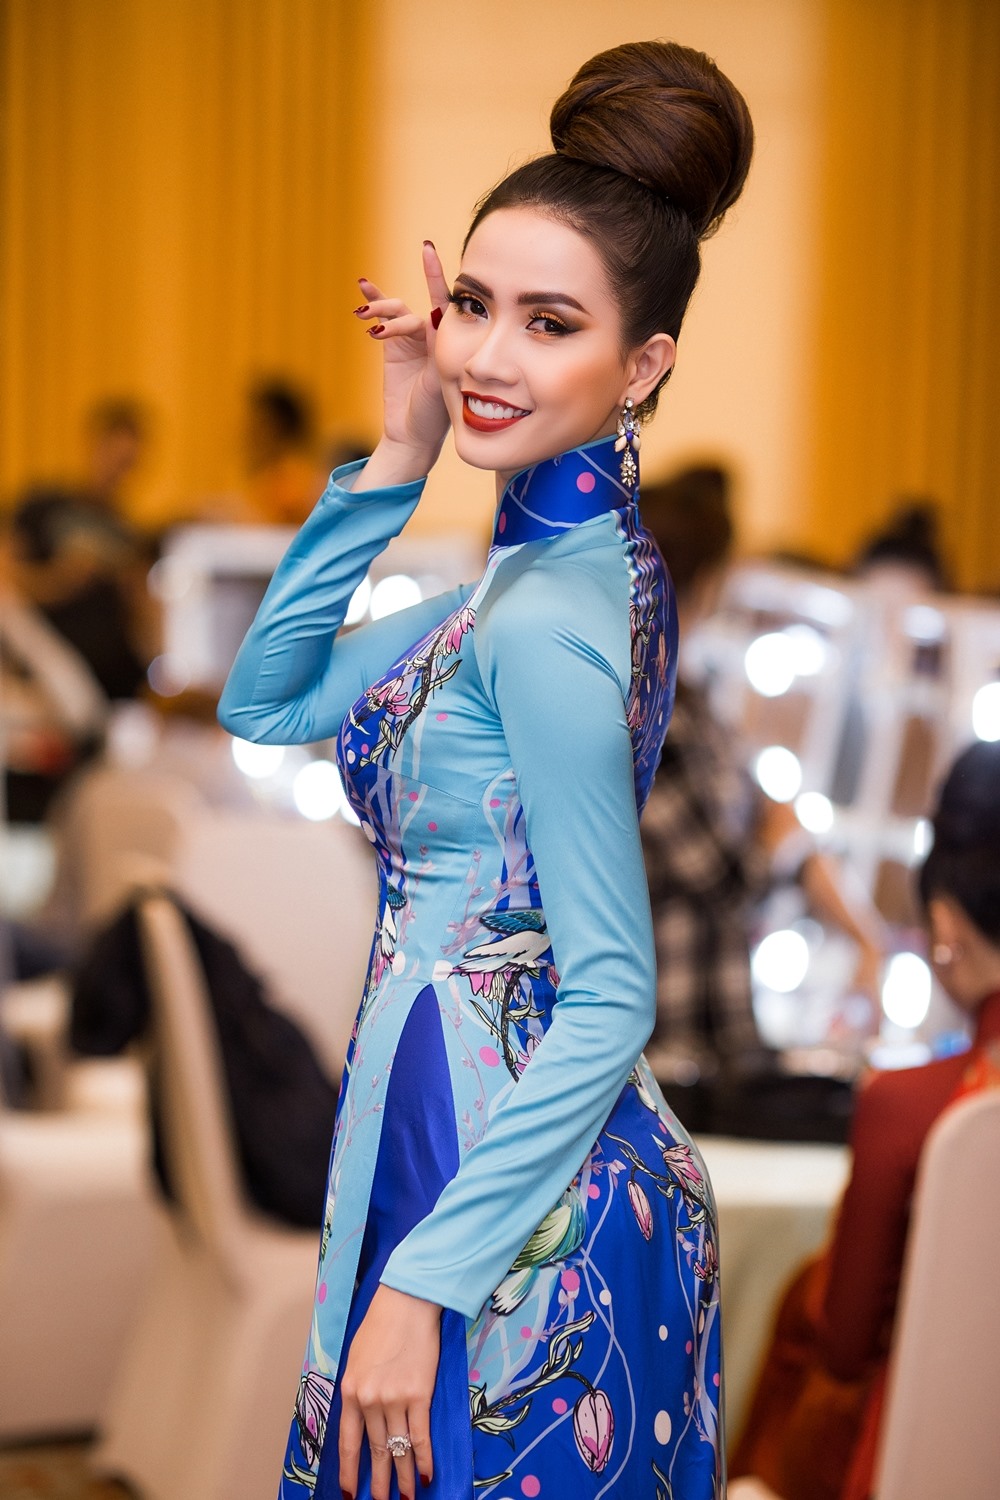 Xuất hiện trên thảm đỏ, Phan Thị Mơ diện chiếc áo dài màu xanh ngọc thướt tha mang tới một vẻ đẹp nhẹ nhàng, thanh thoát nhưng đầy cuốn hút.